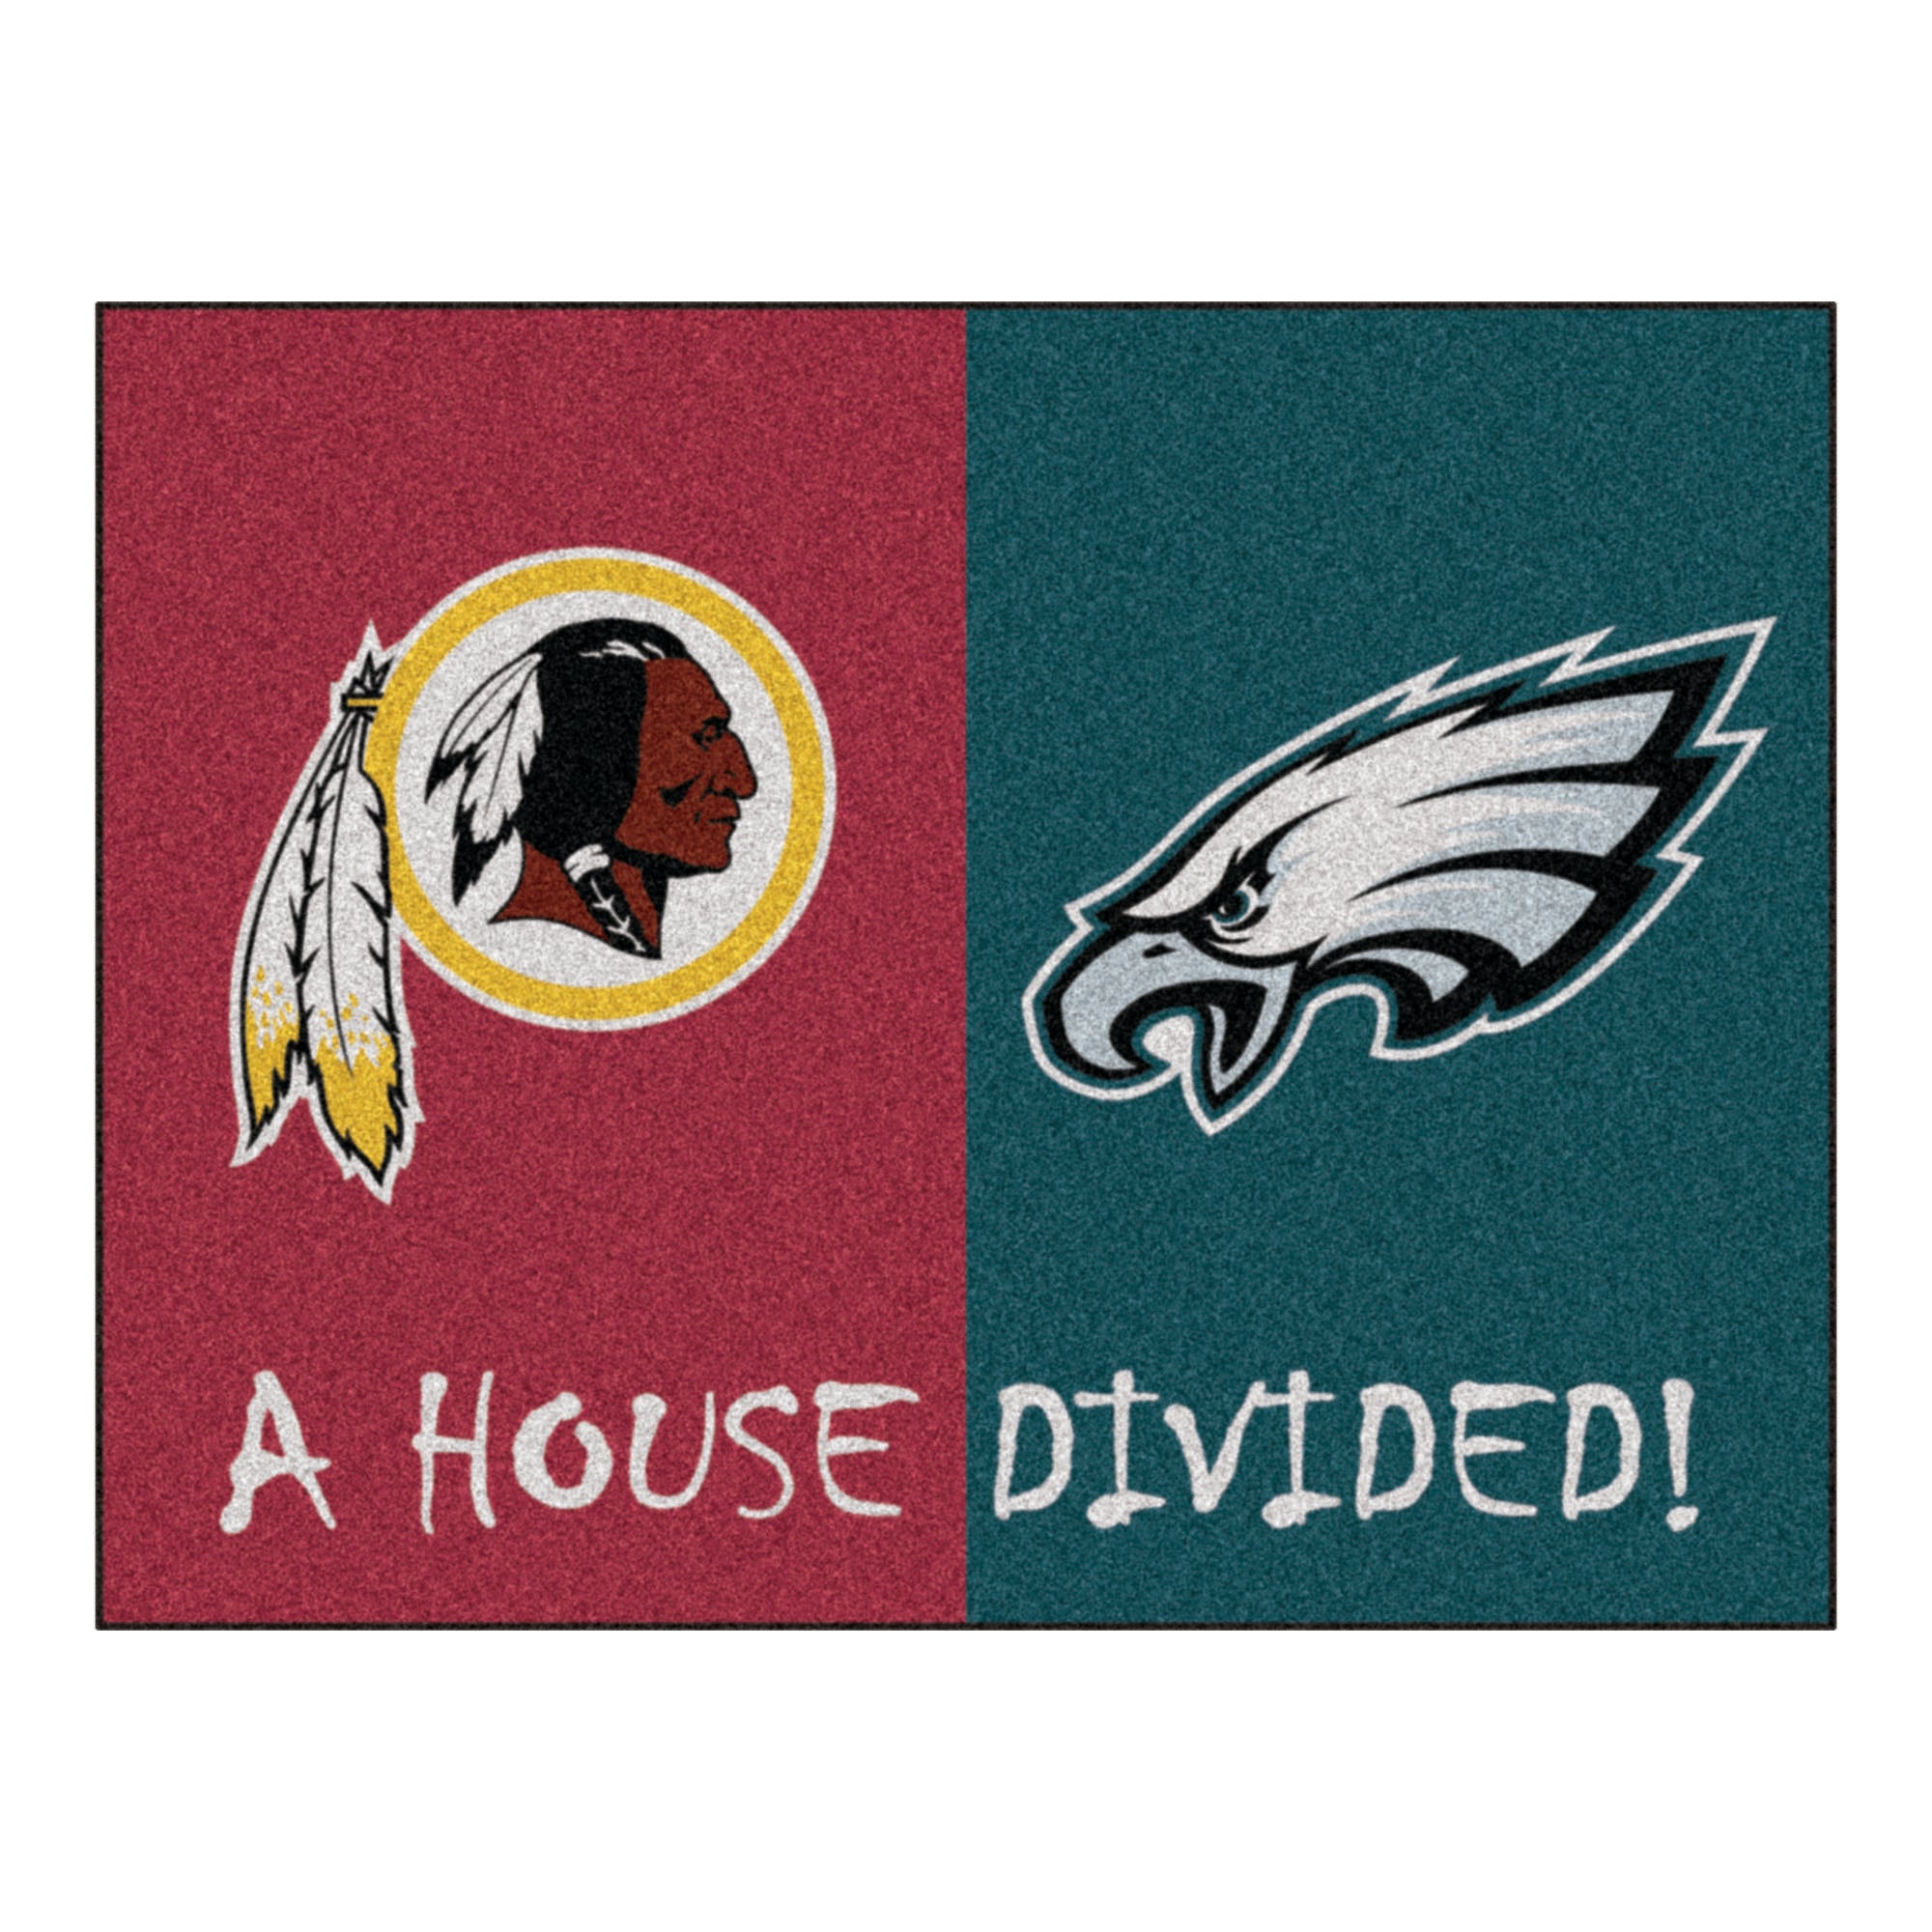 NFL House Divided - Redskins / Eagles House Divided Mat